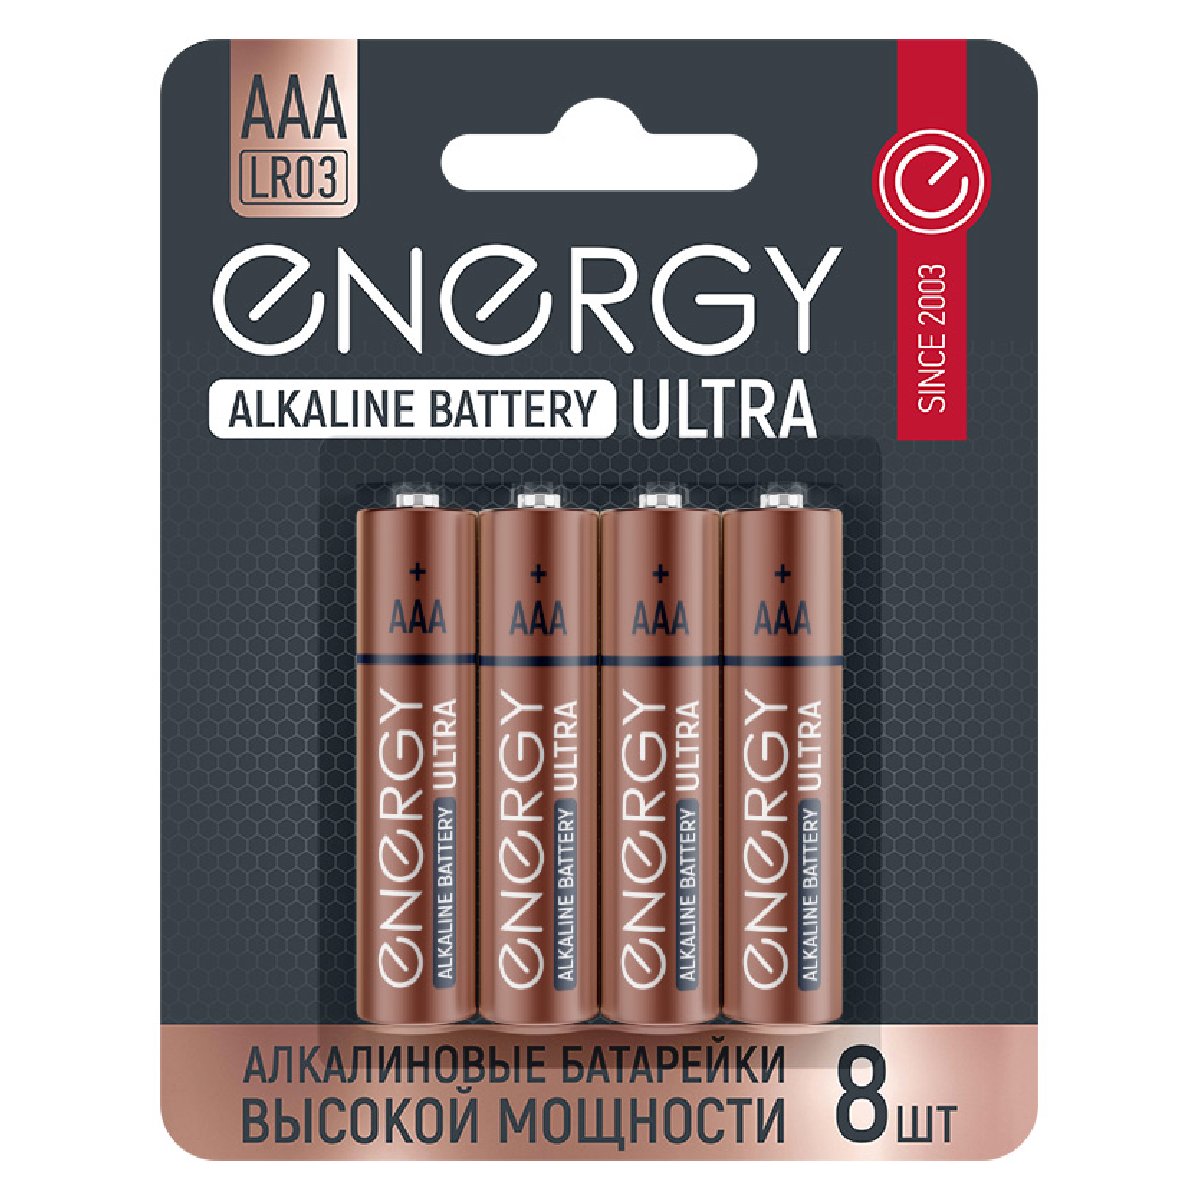 Батарейка алкалиновая Energy Ultra LR03 8B (АAА) (104979)